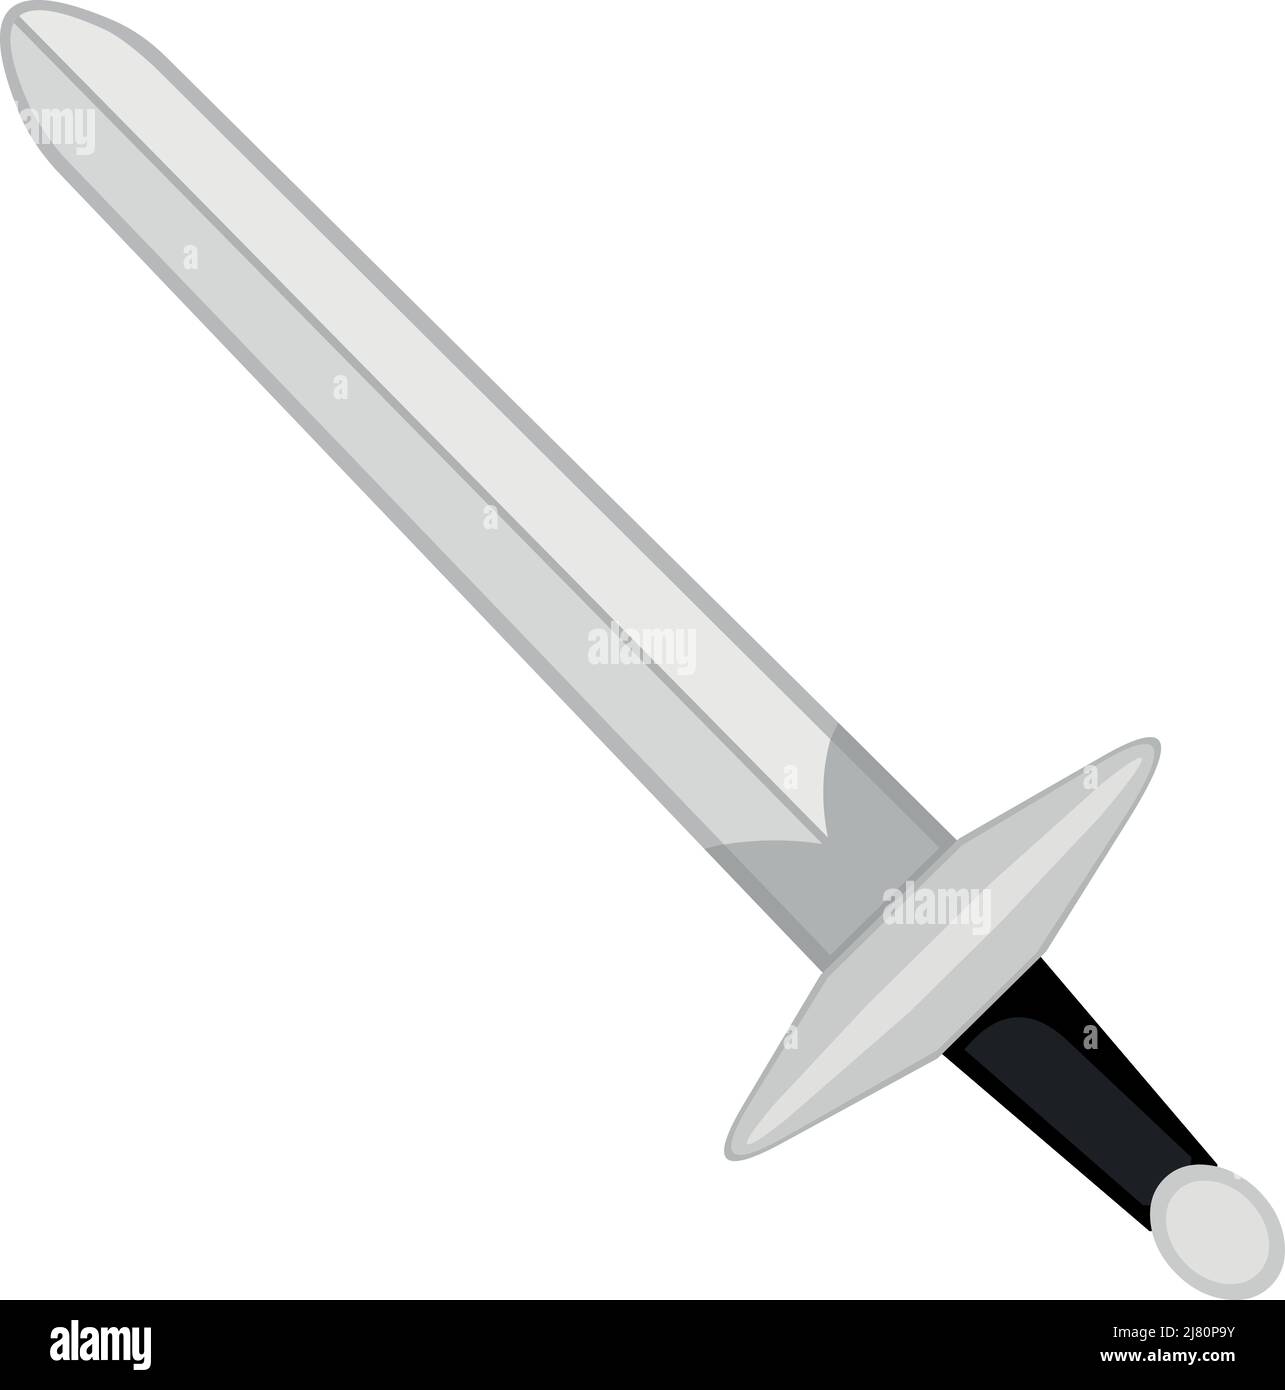 Vektor-Illustration eines mittelalterlichen Kriegers oder Ritter Schwert Stock Vektor